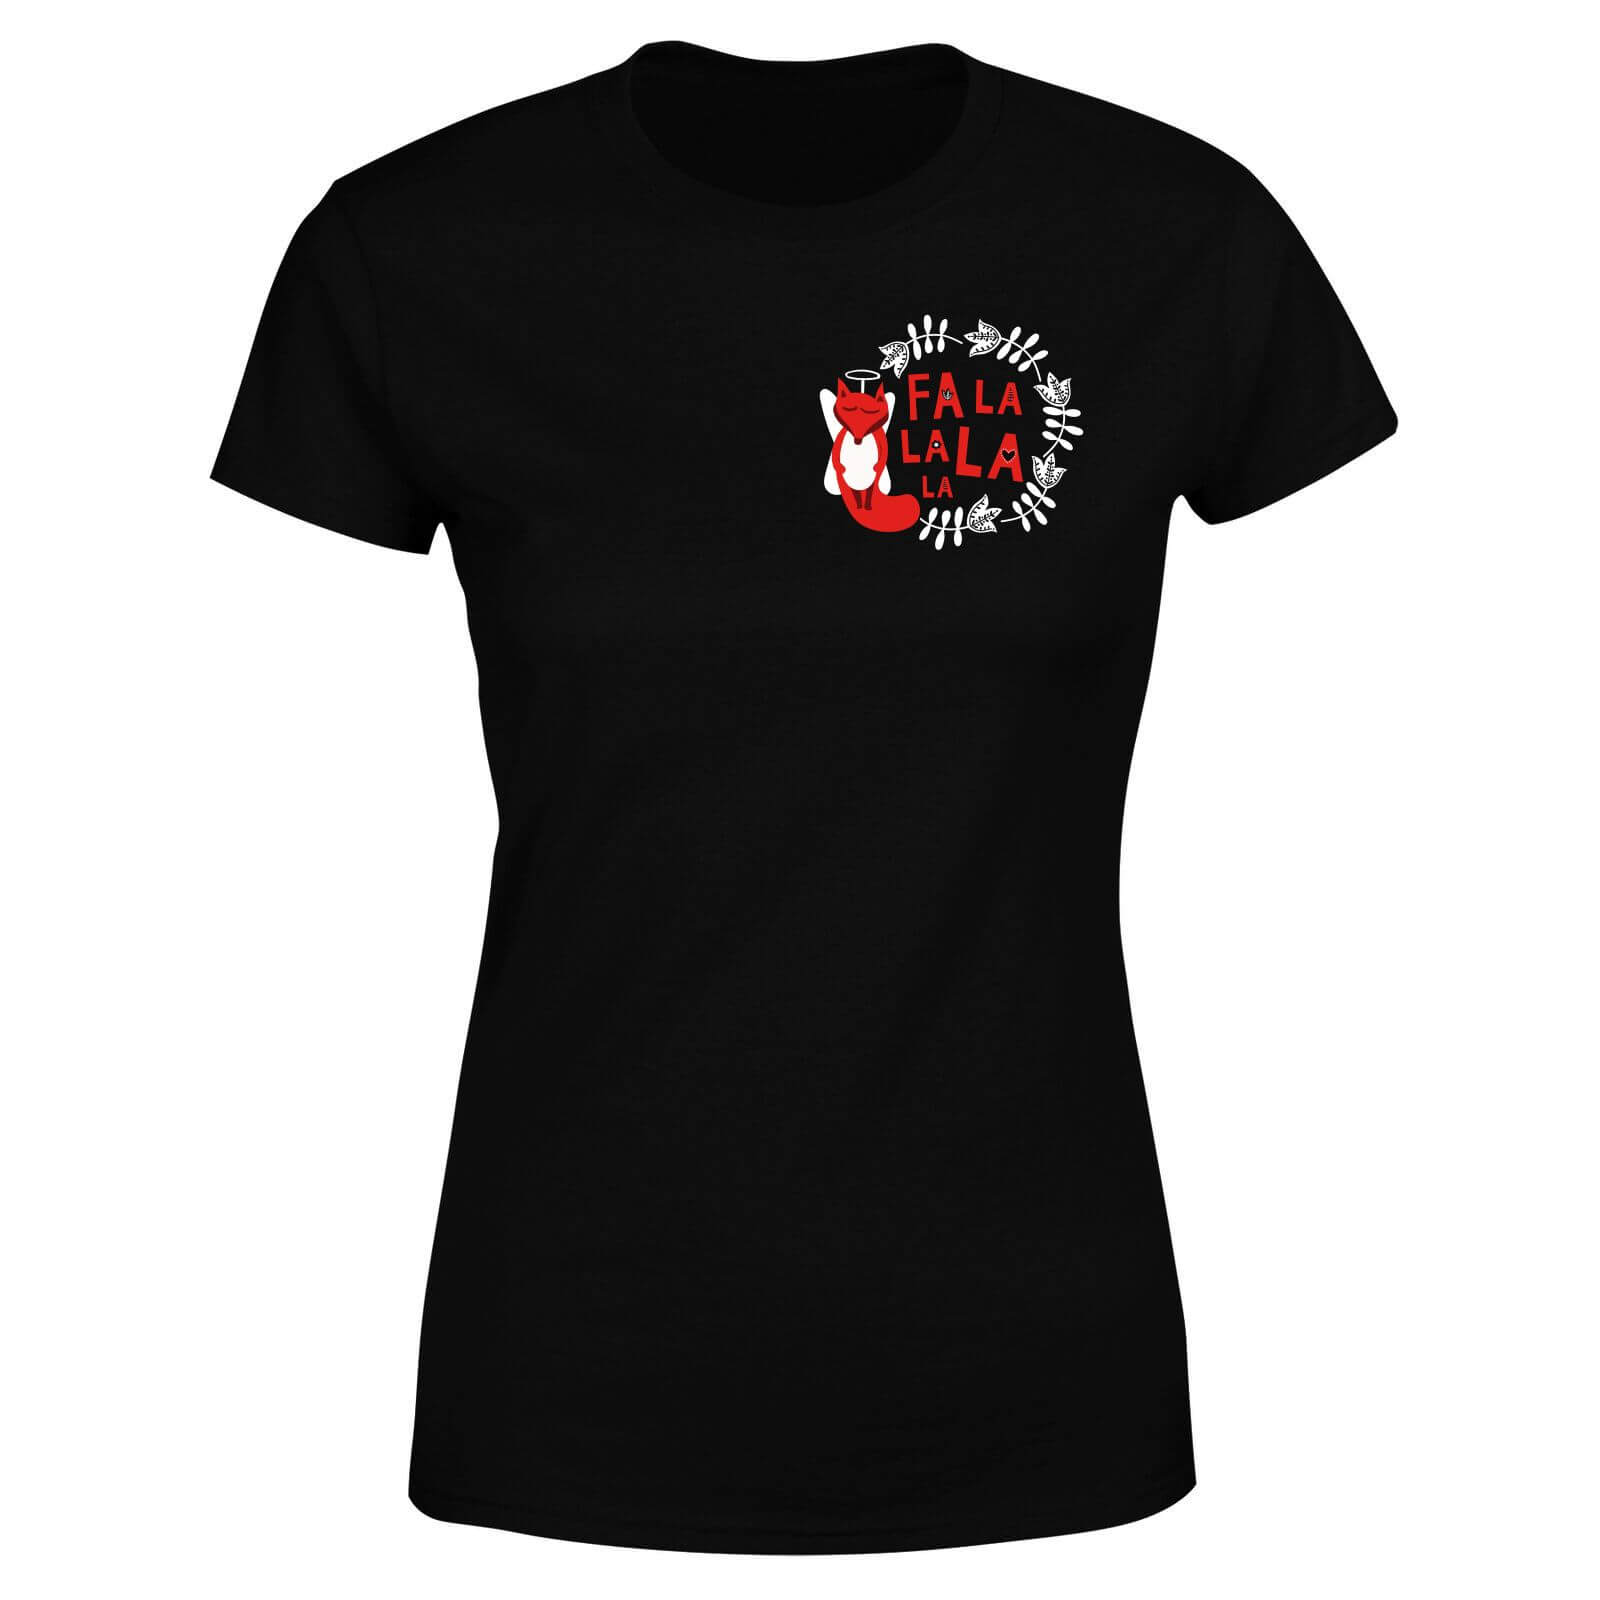 Fa La La La La Women's T-Shirt - Black - S - Black